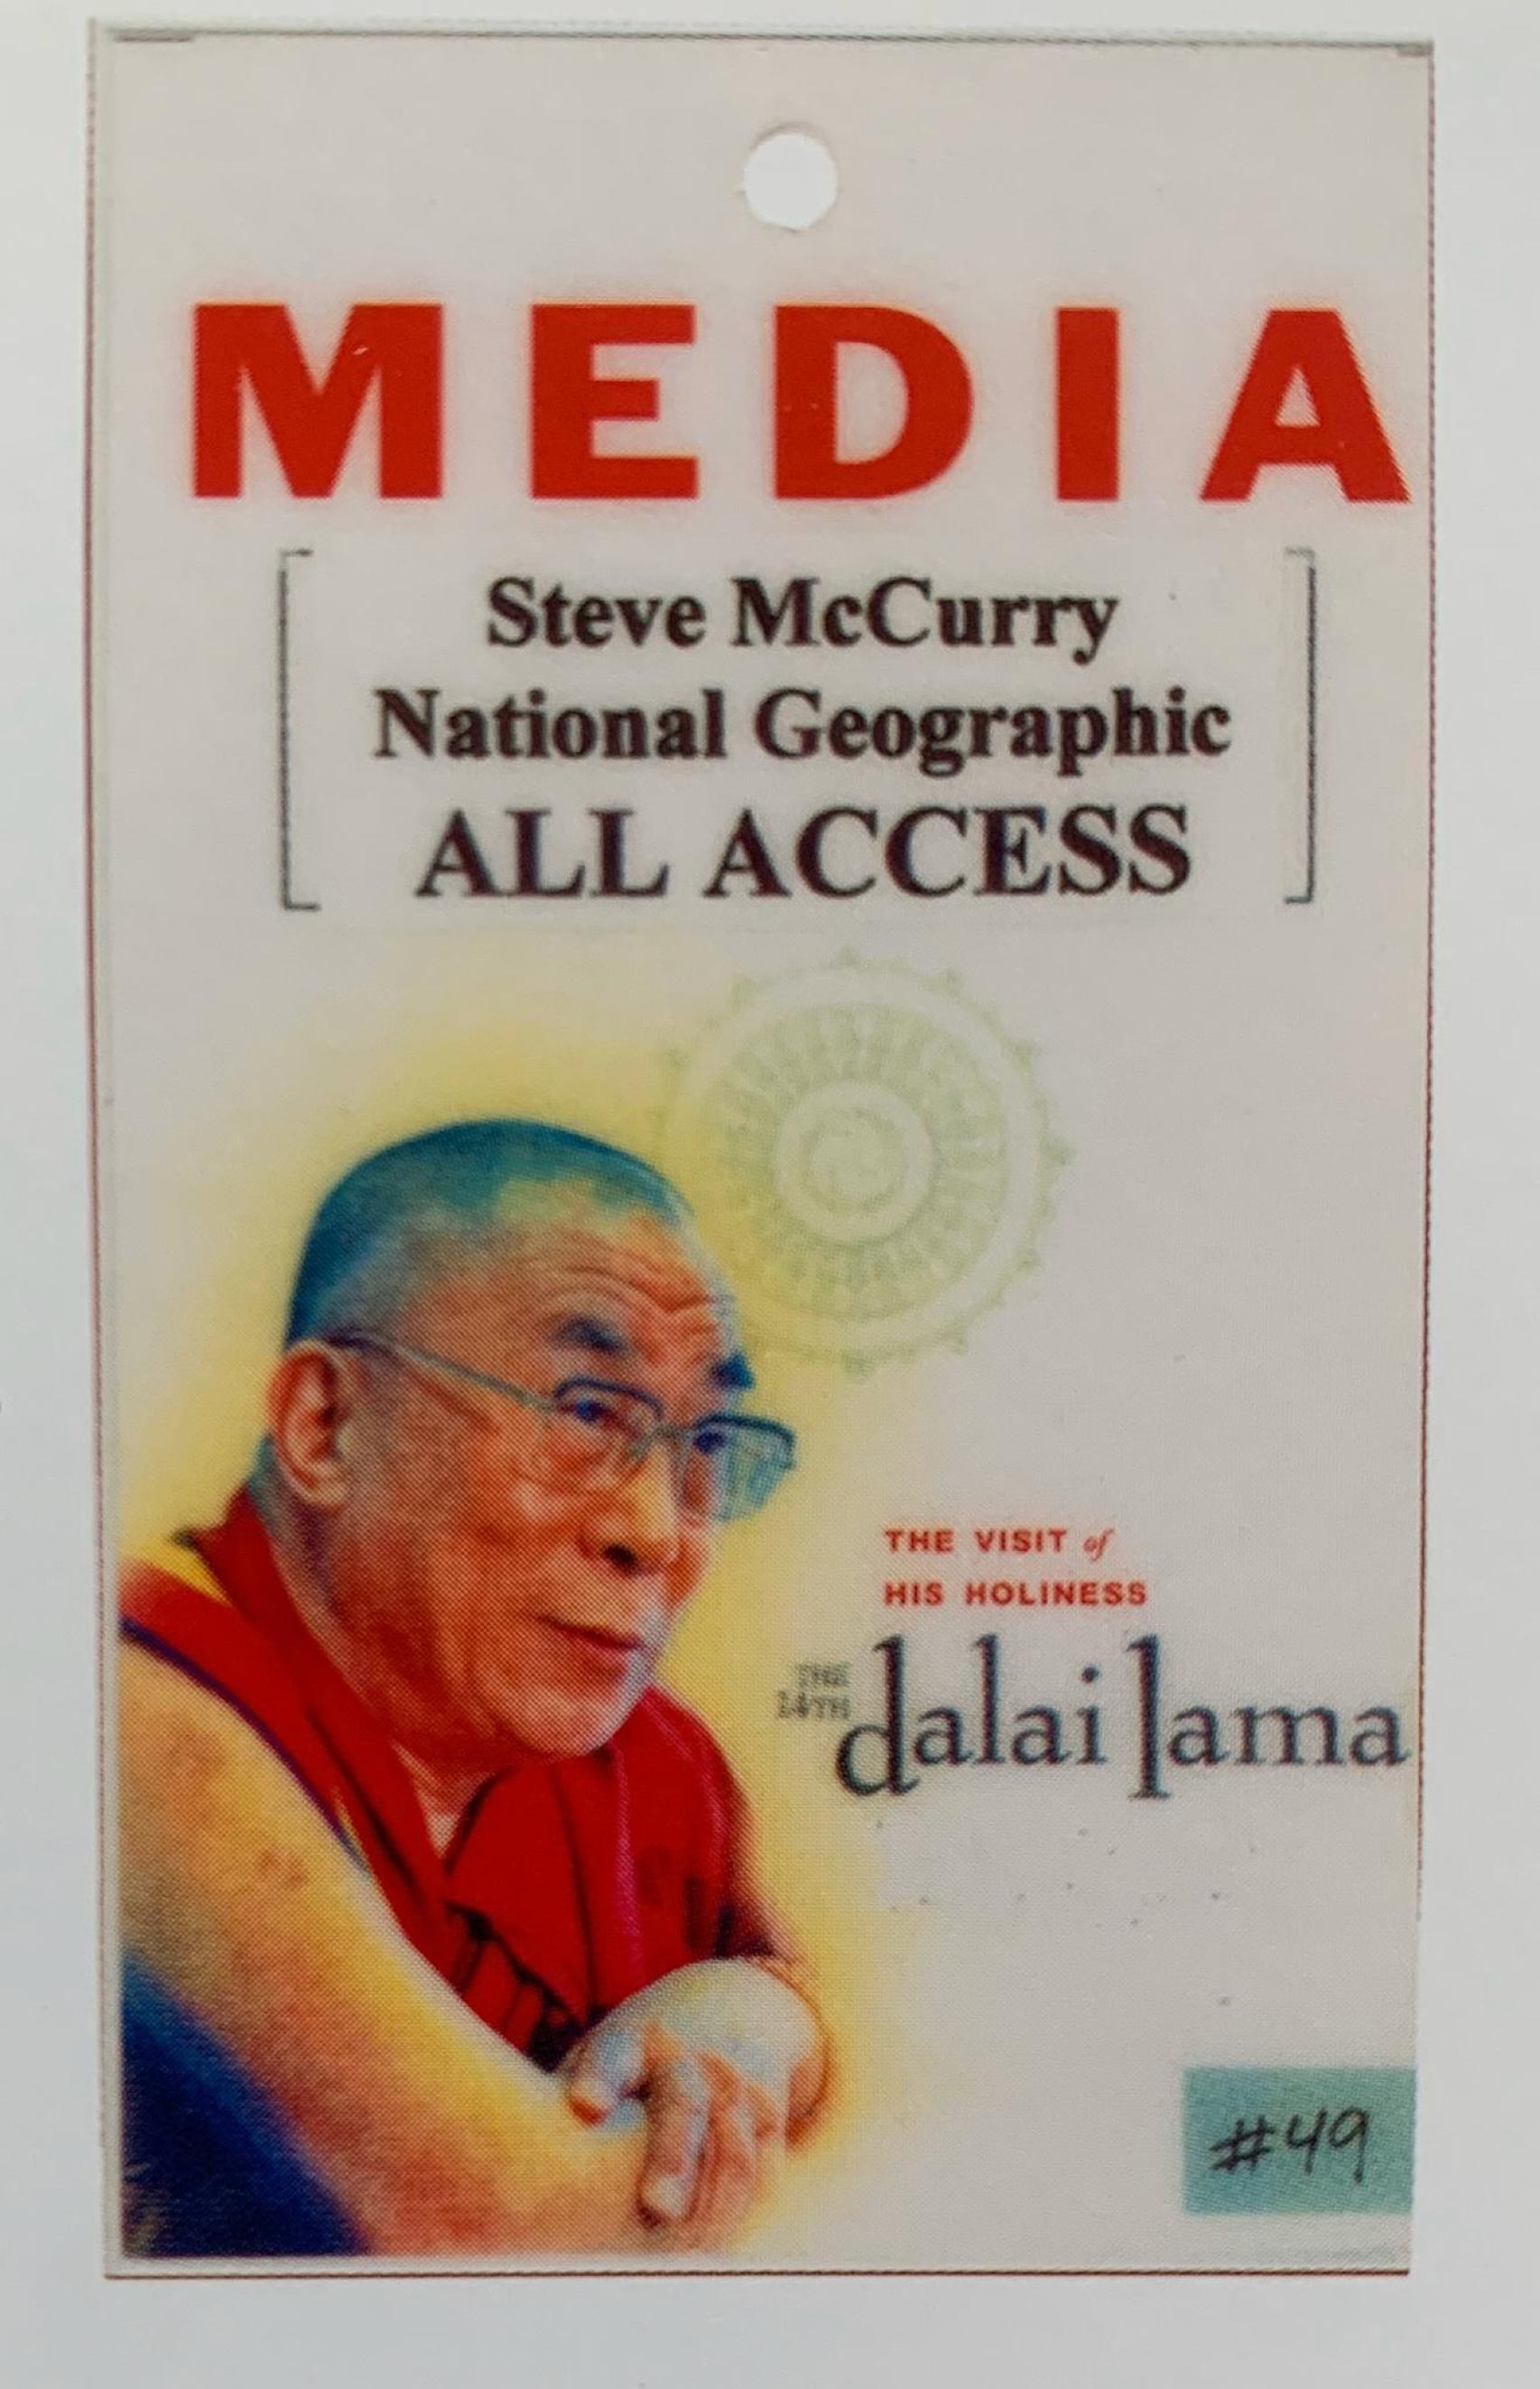 El “All Access” de Steve McCurry para fotografiar al Dalai Lama, con cámaras asiáticas.